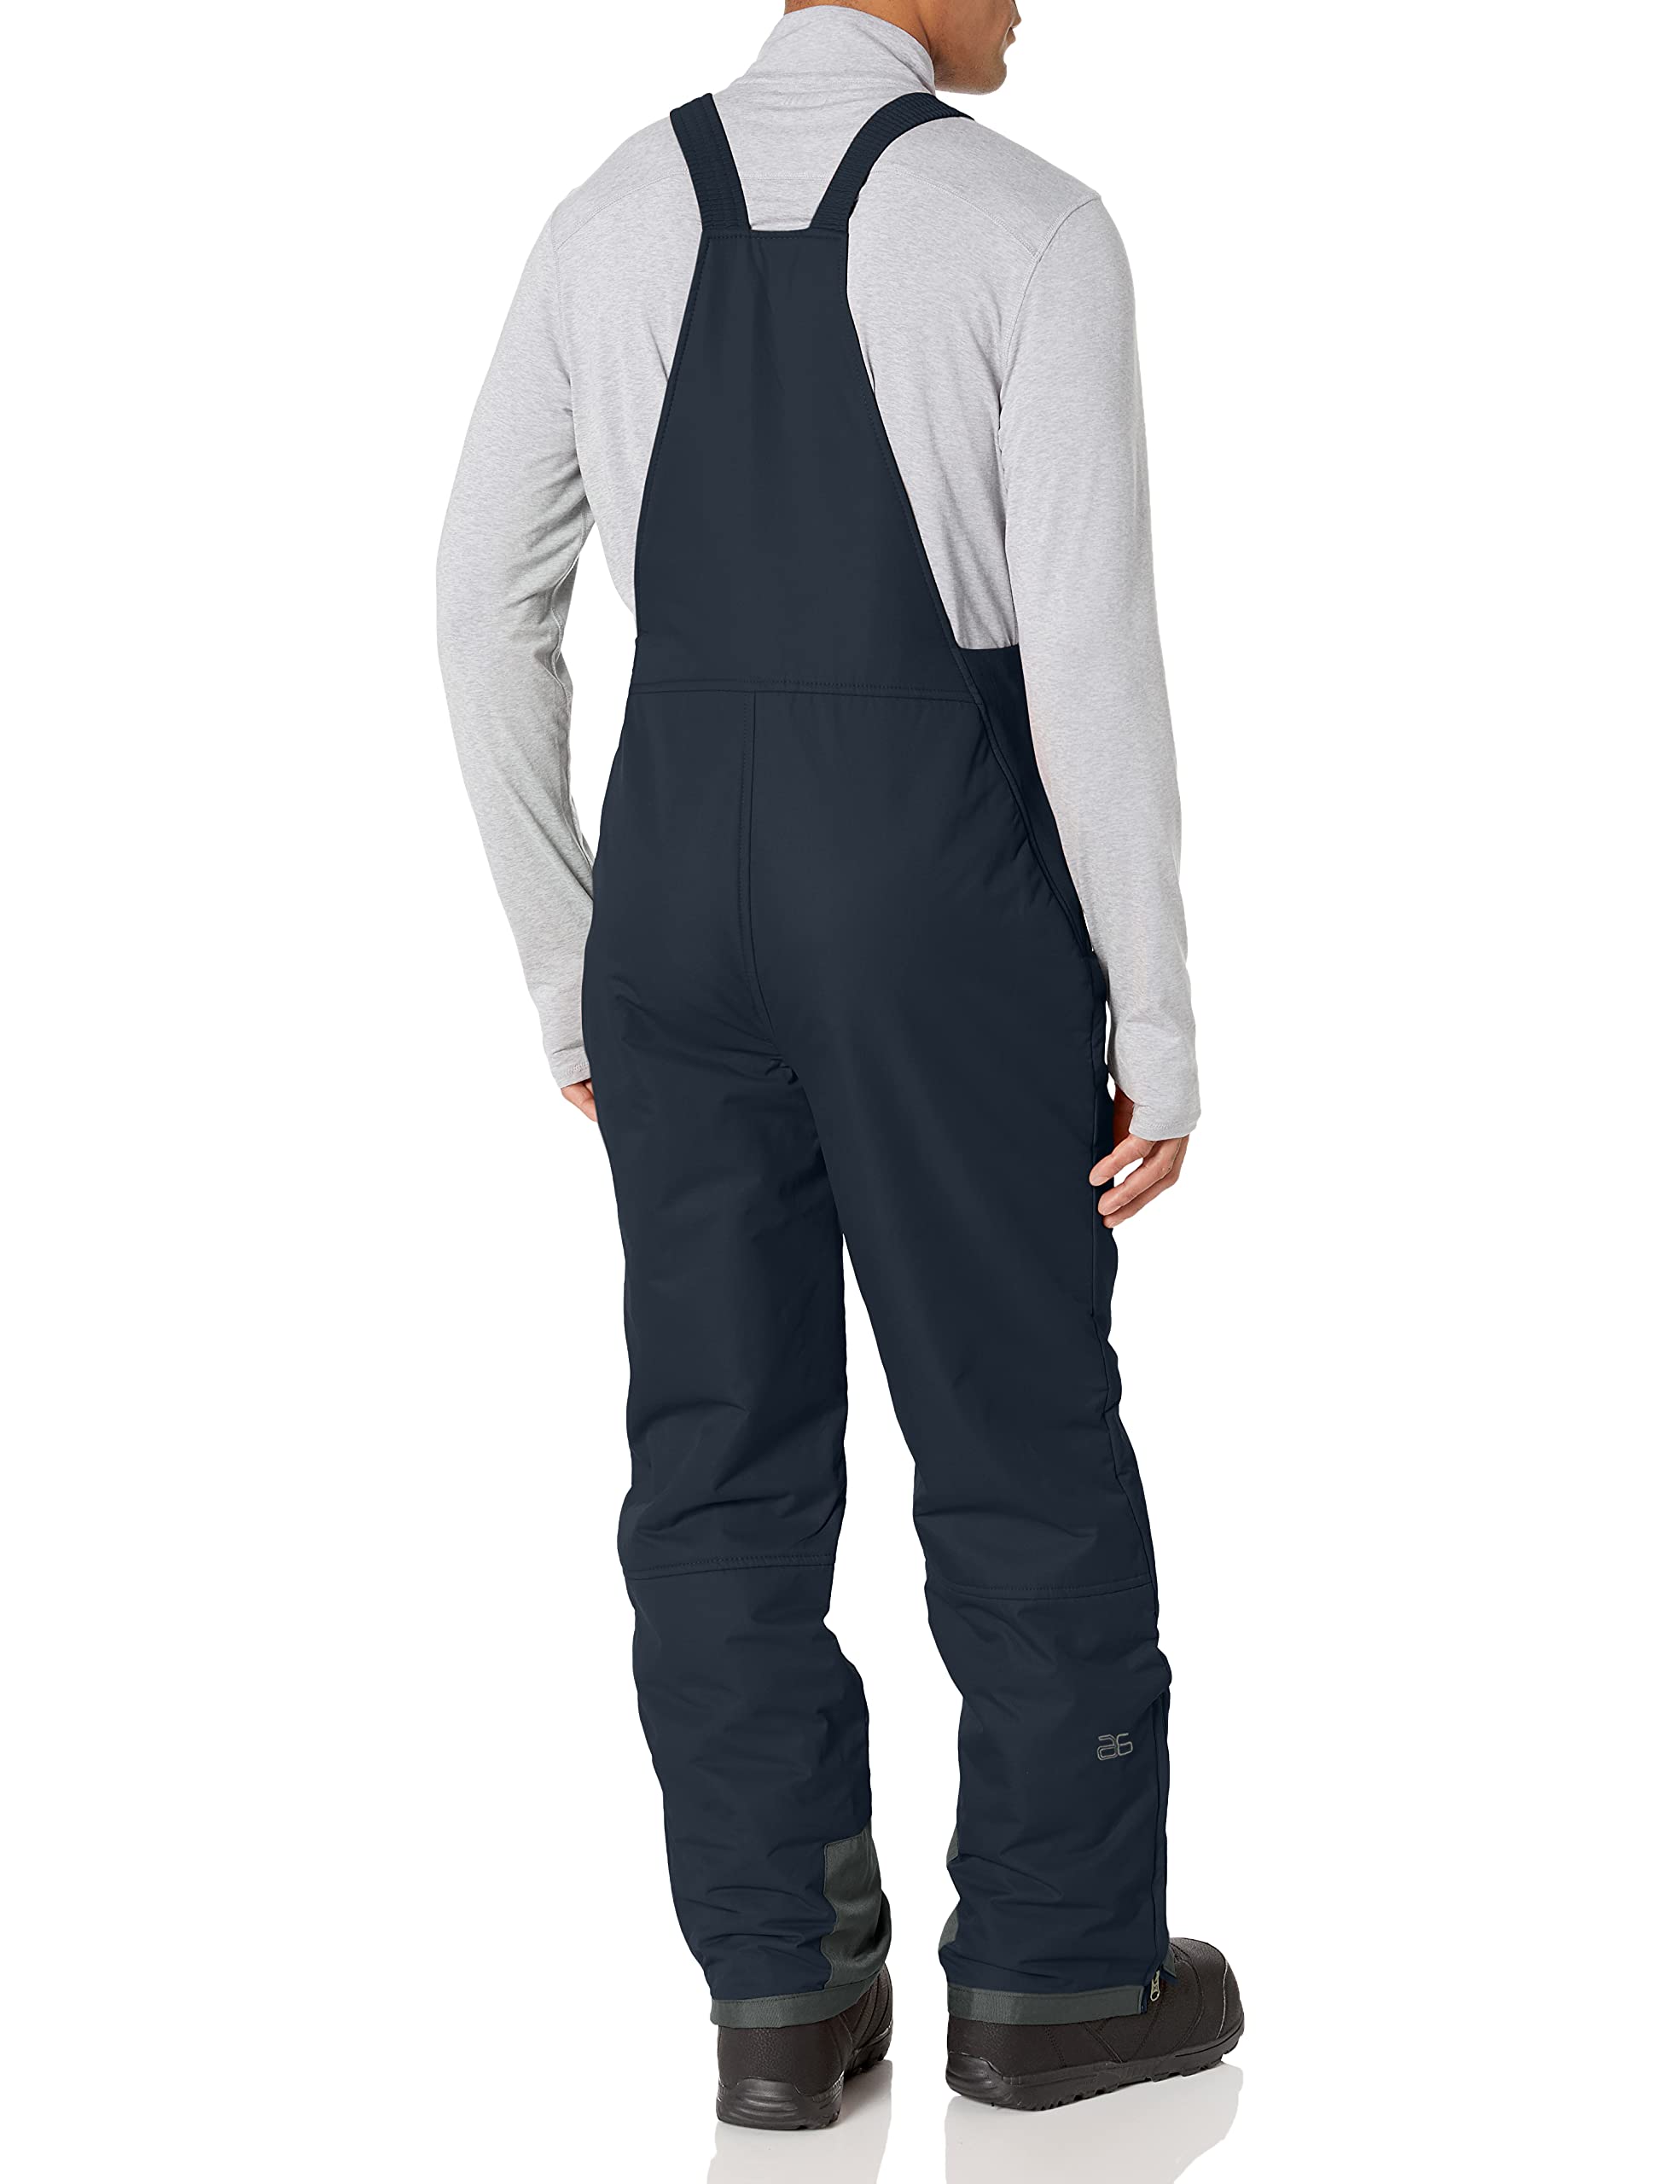  Arctix Men's Essential Snow Pants, Black, XX-Large